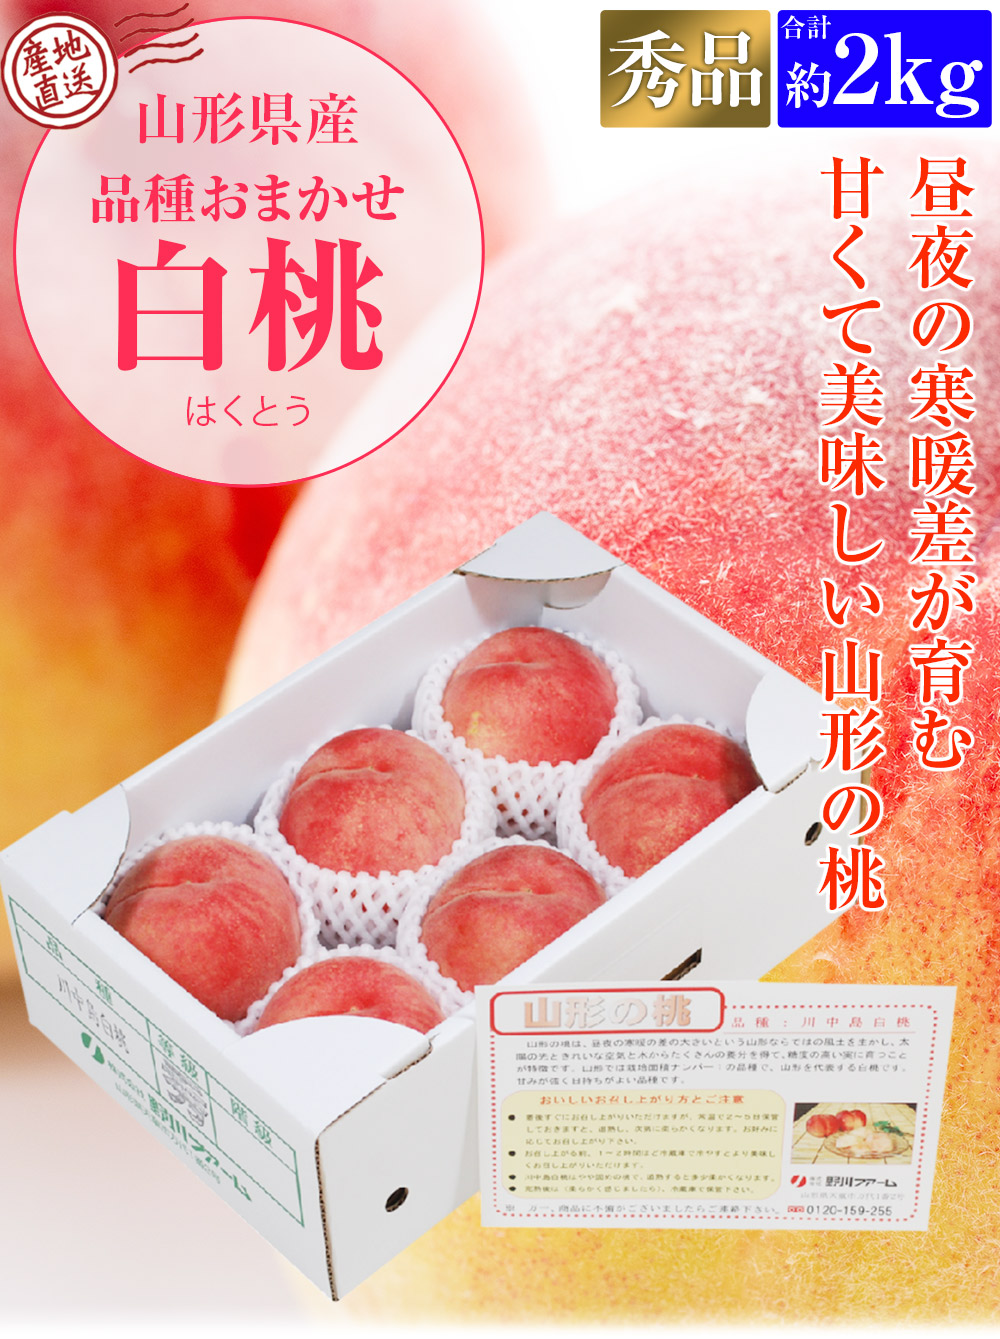 欲しいの 白桃 2kg 山形県産 秀品 品種おまかせ 5〜6玉程度 桃 モモ もも 産直 冷蔵便 同梱不可 指定日不可 